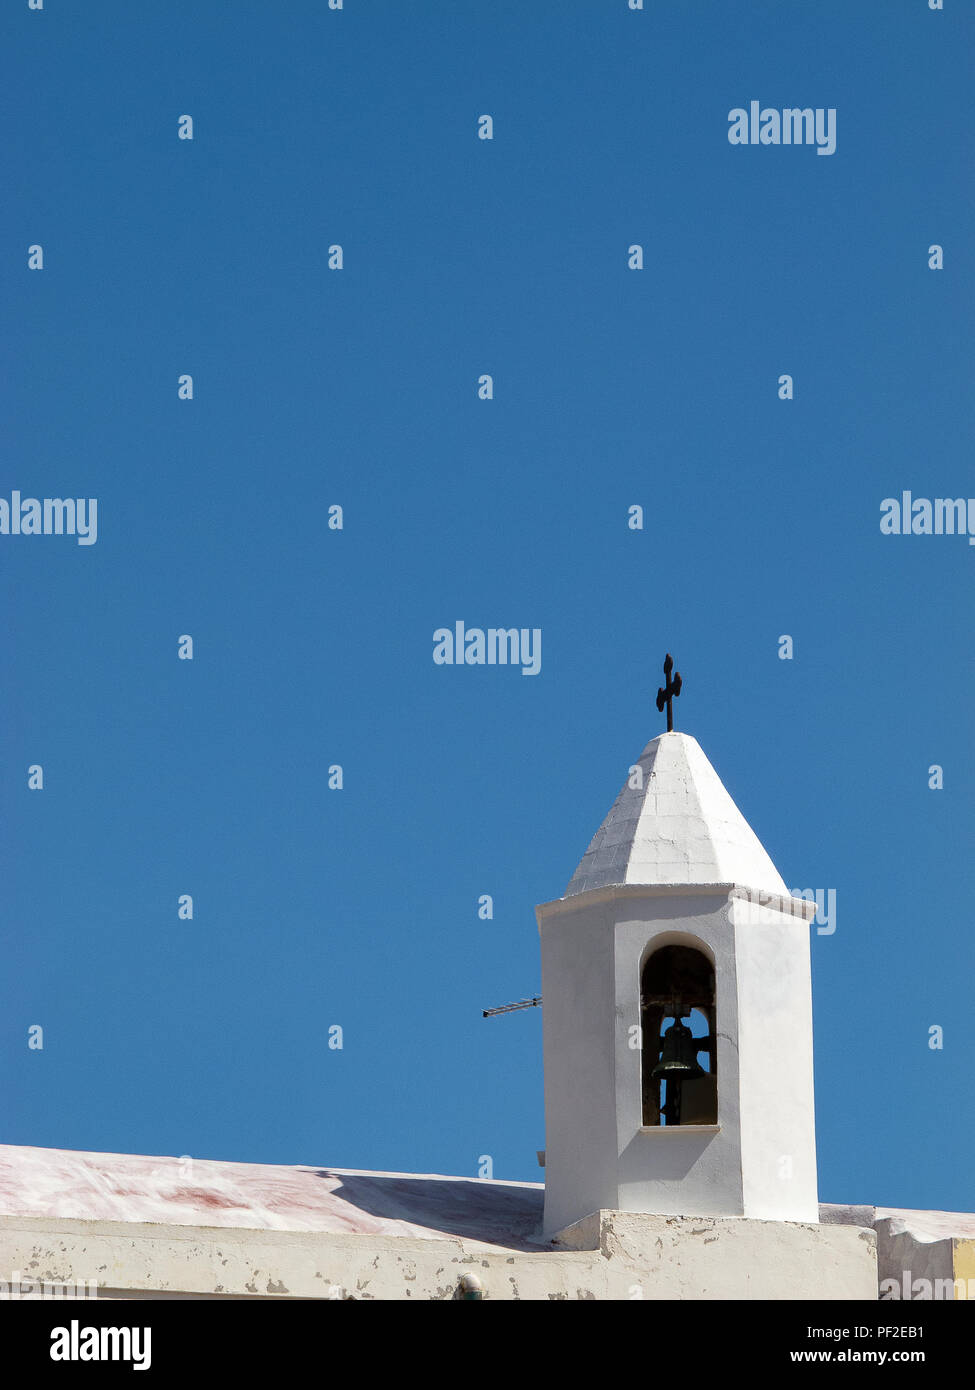 Calabria (Italia): bianco piccolo campanile sul tetto di una chiesa con il blu del cielo senza nuvole sullo sfondo, in una soleggiata giornata estiva Foto Stock